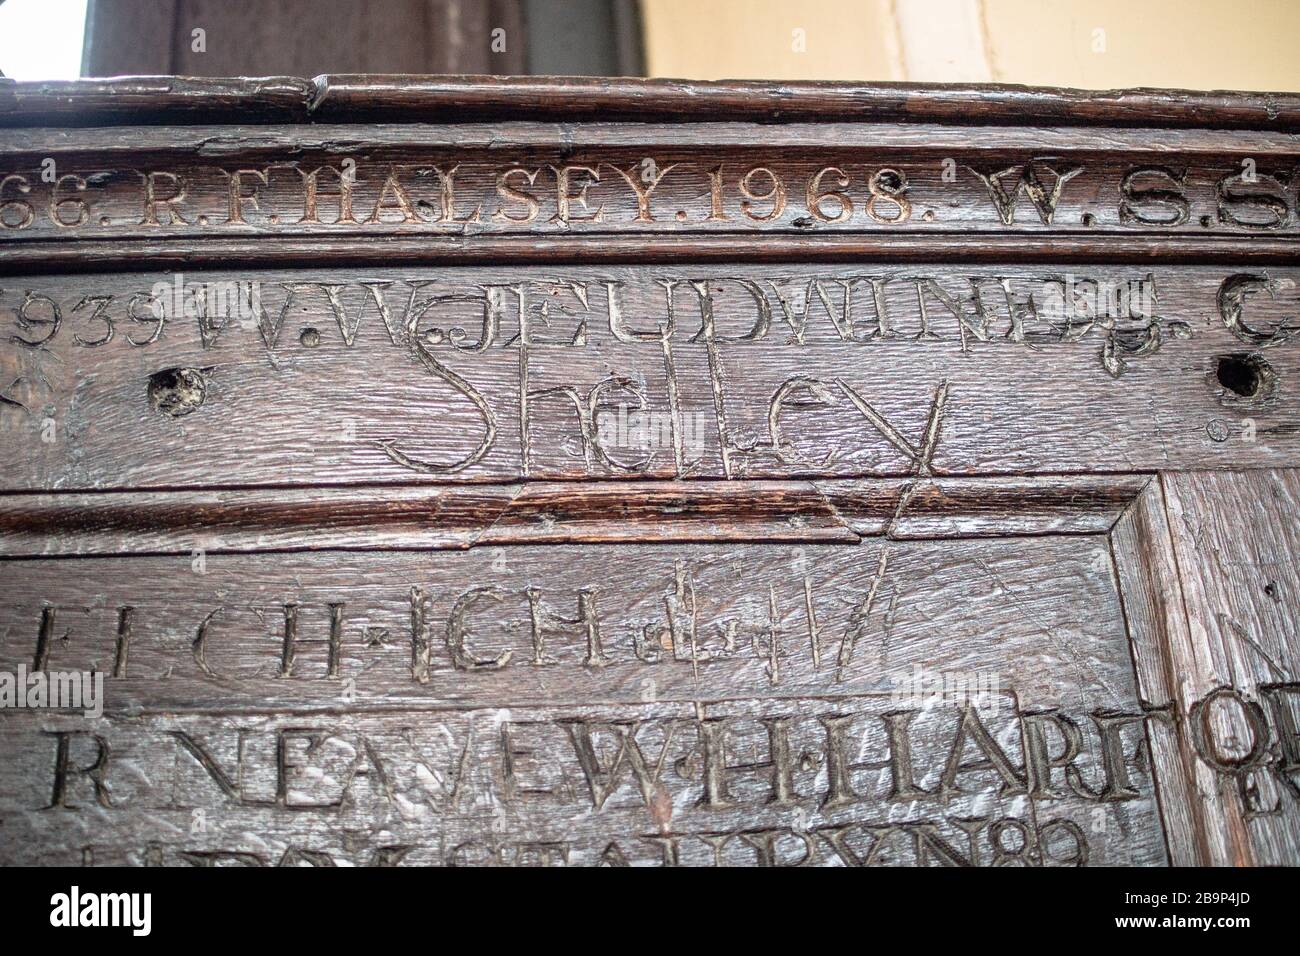 Holzvertäfelung in der Upper School, Eton College, das Percy Bysshe Shelleys Namen zeigt, der unter anderen ehemaligen Schülern gehauen wurde. Shelleys Name wurde eindeutig geschrieben. Stockfoto